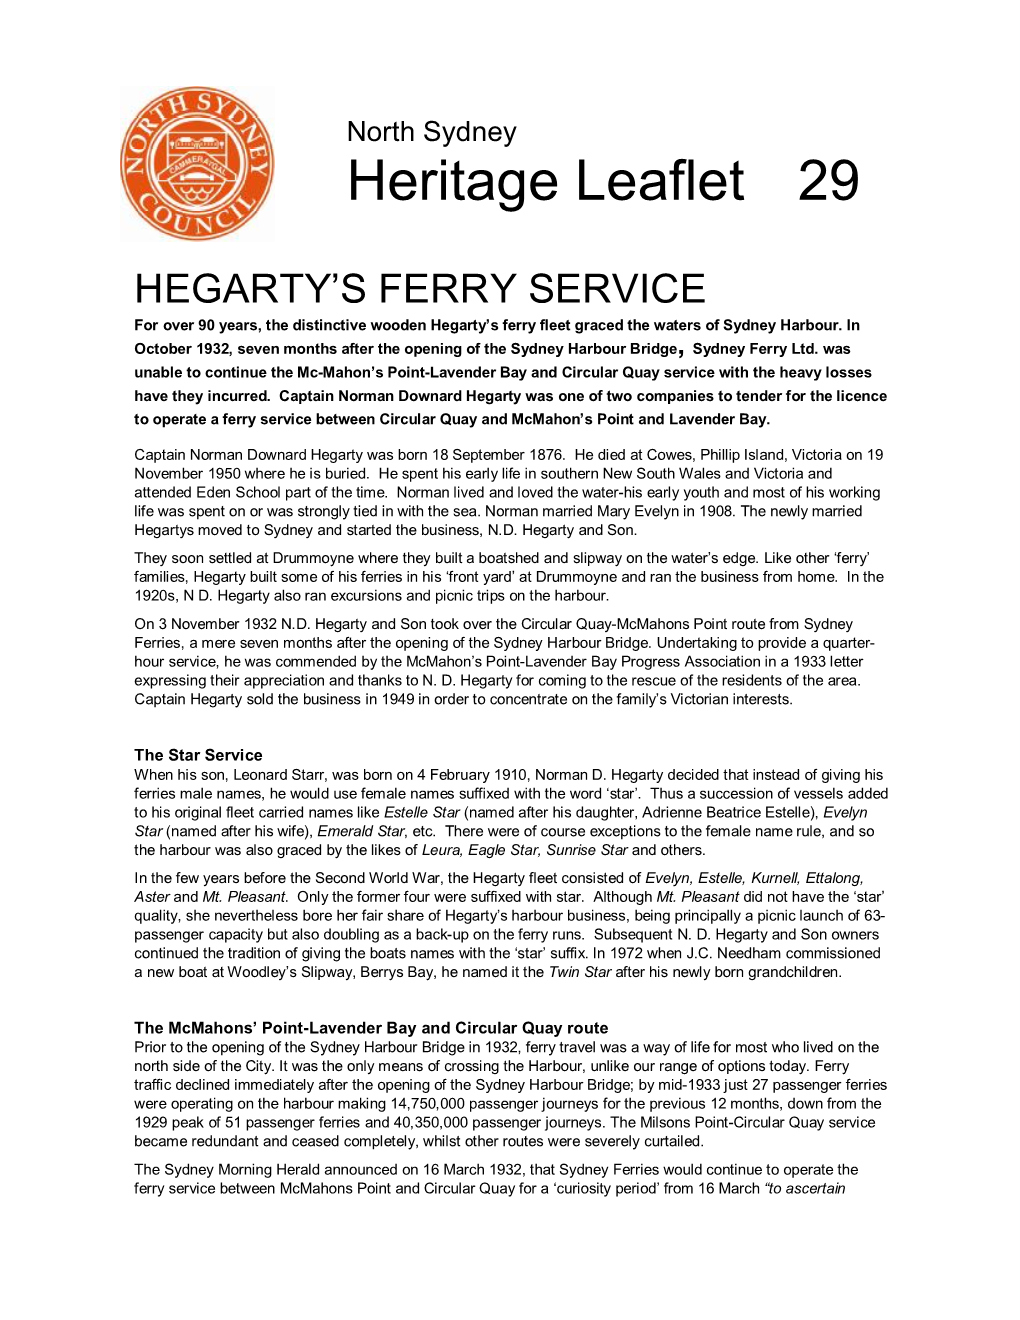 Heritage Leaflet 29